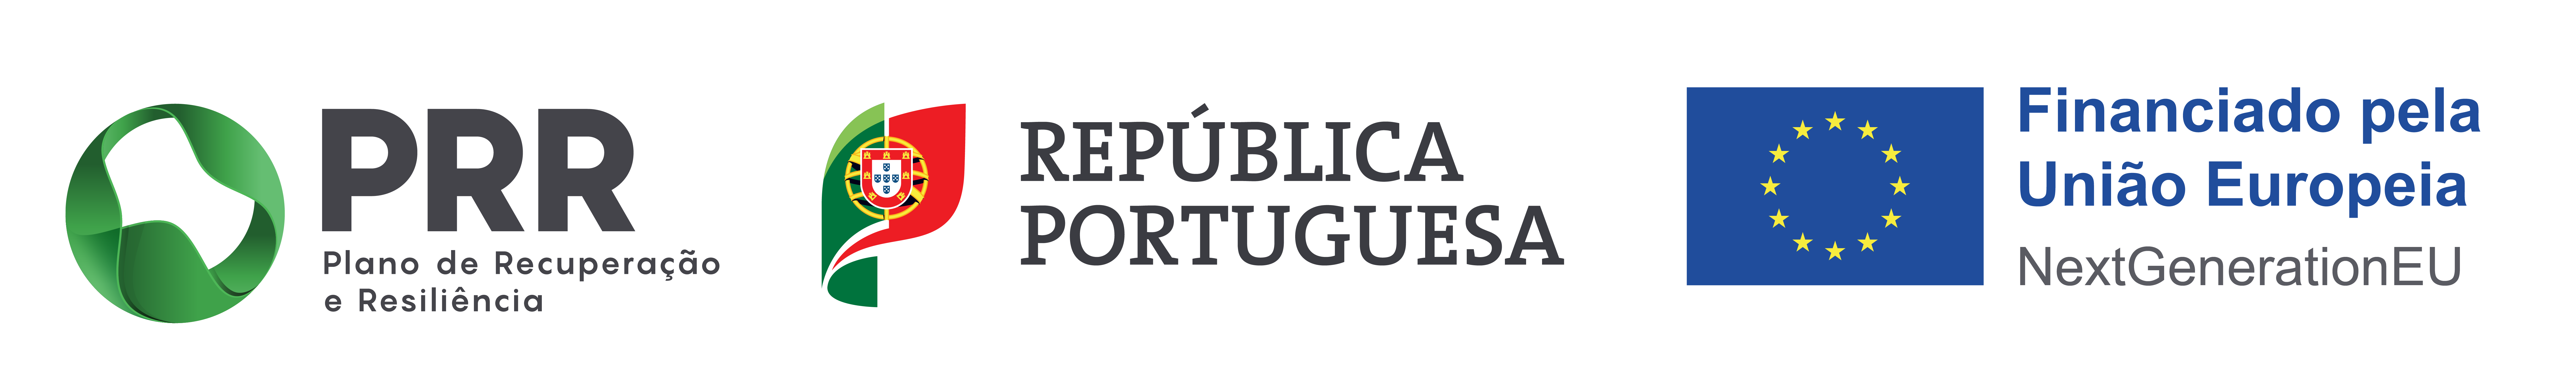 Barra de logos: Plano de Recuperação e Resiliência-PPR, República Portuguesa, Financiado pela União Europeia-NextGenerationEU